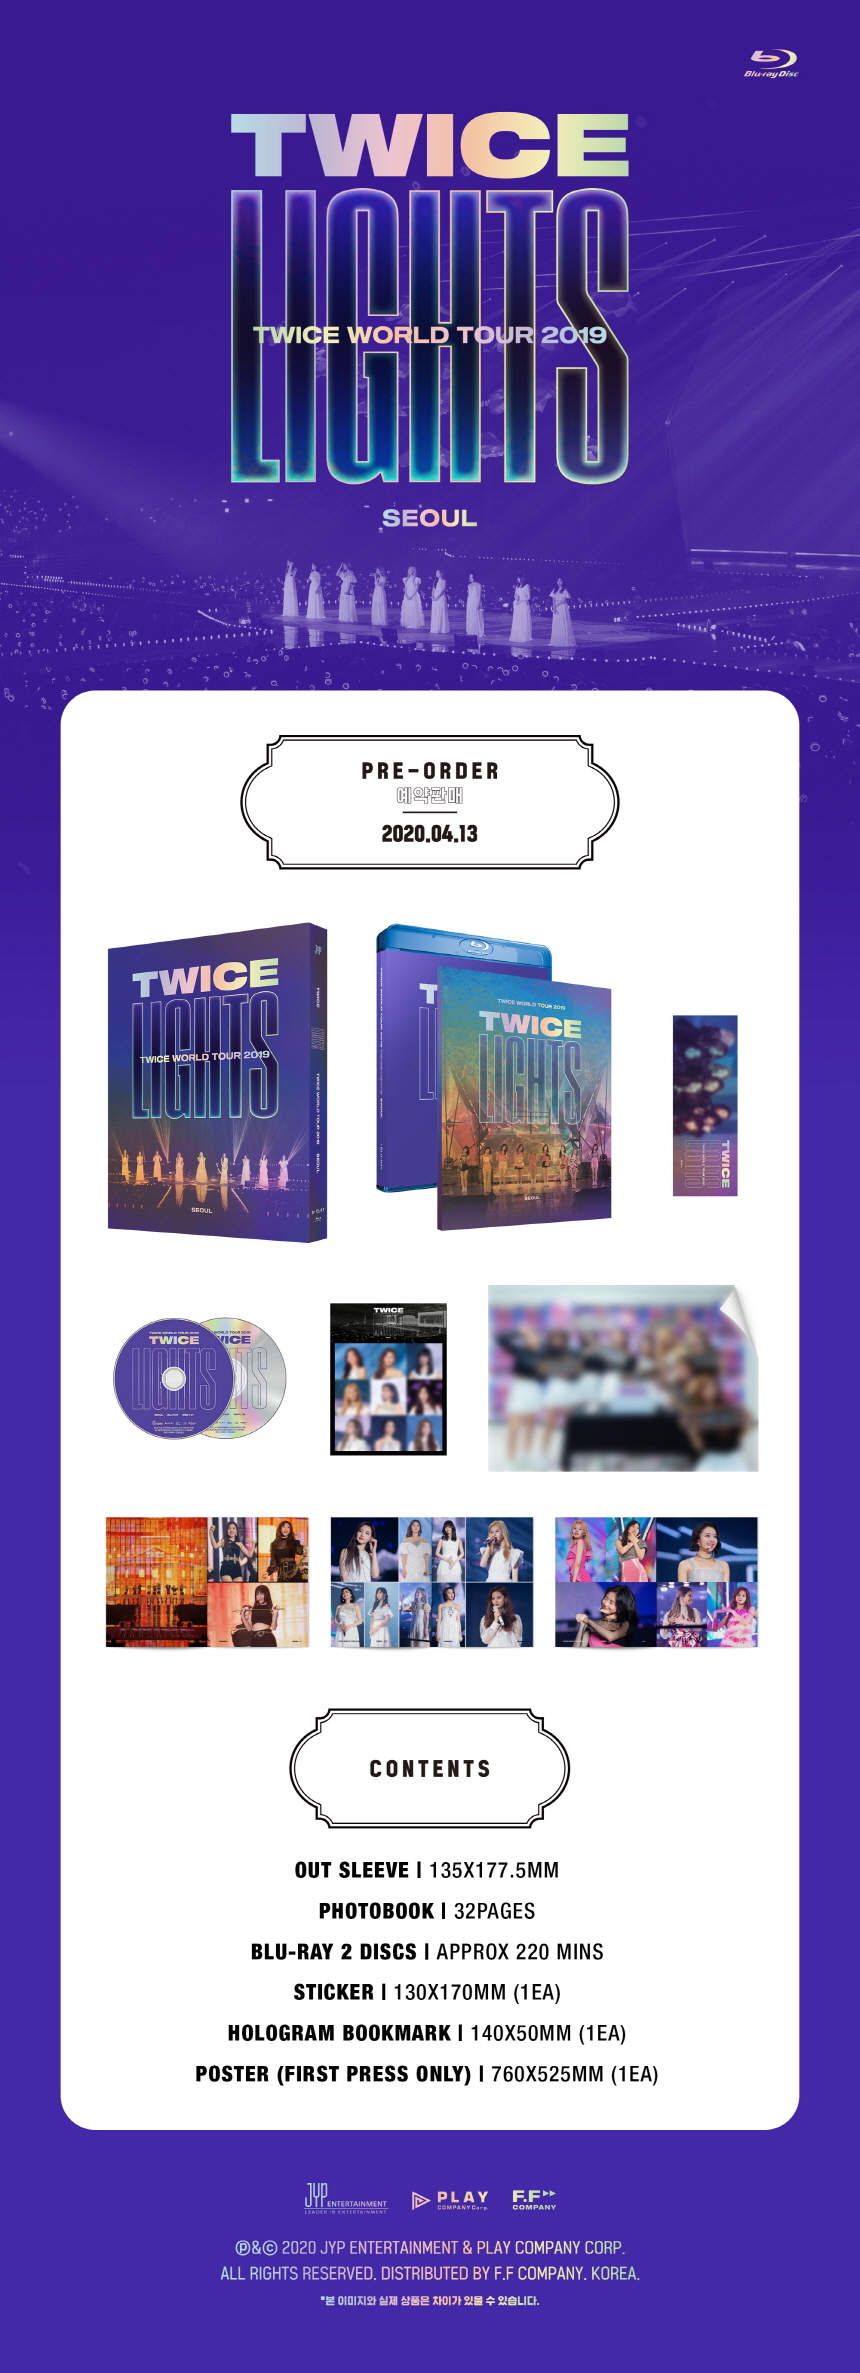 TWICE TOUR IN SEOUL DVD